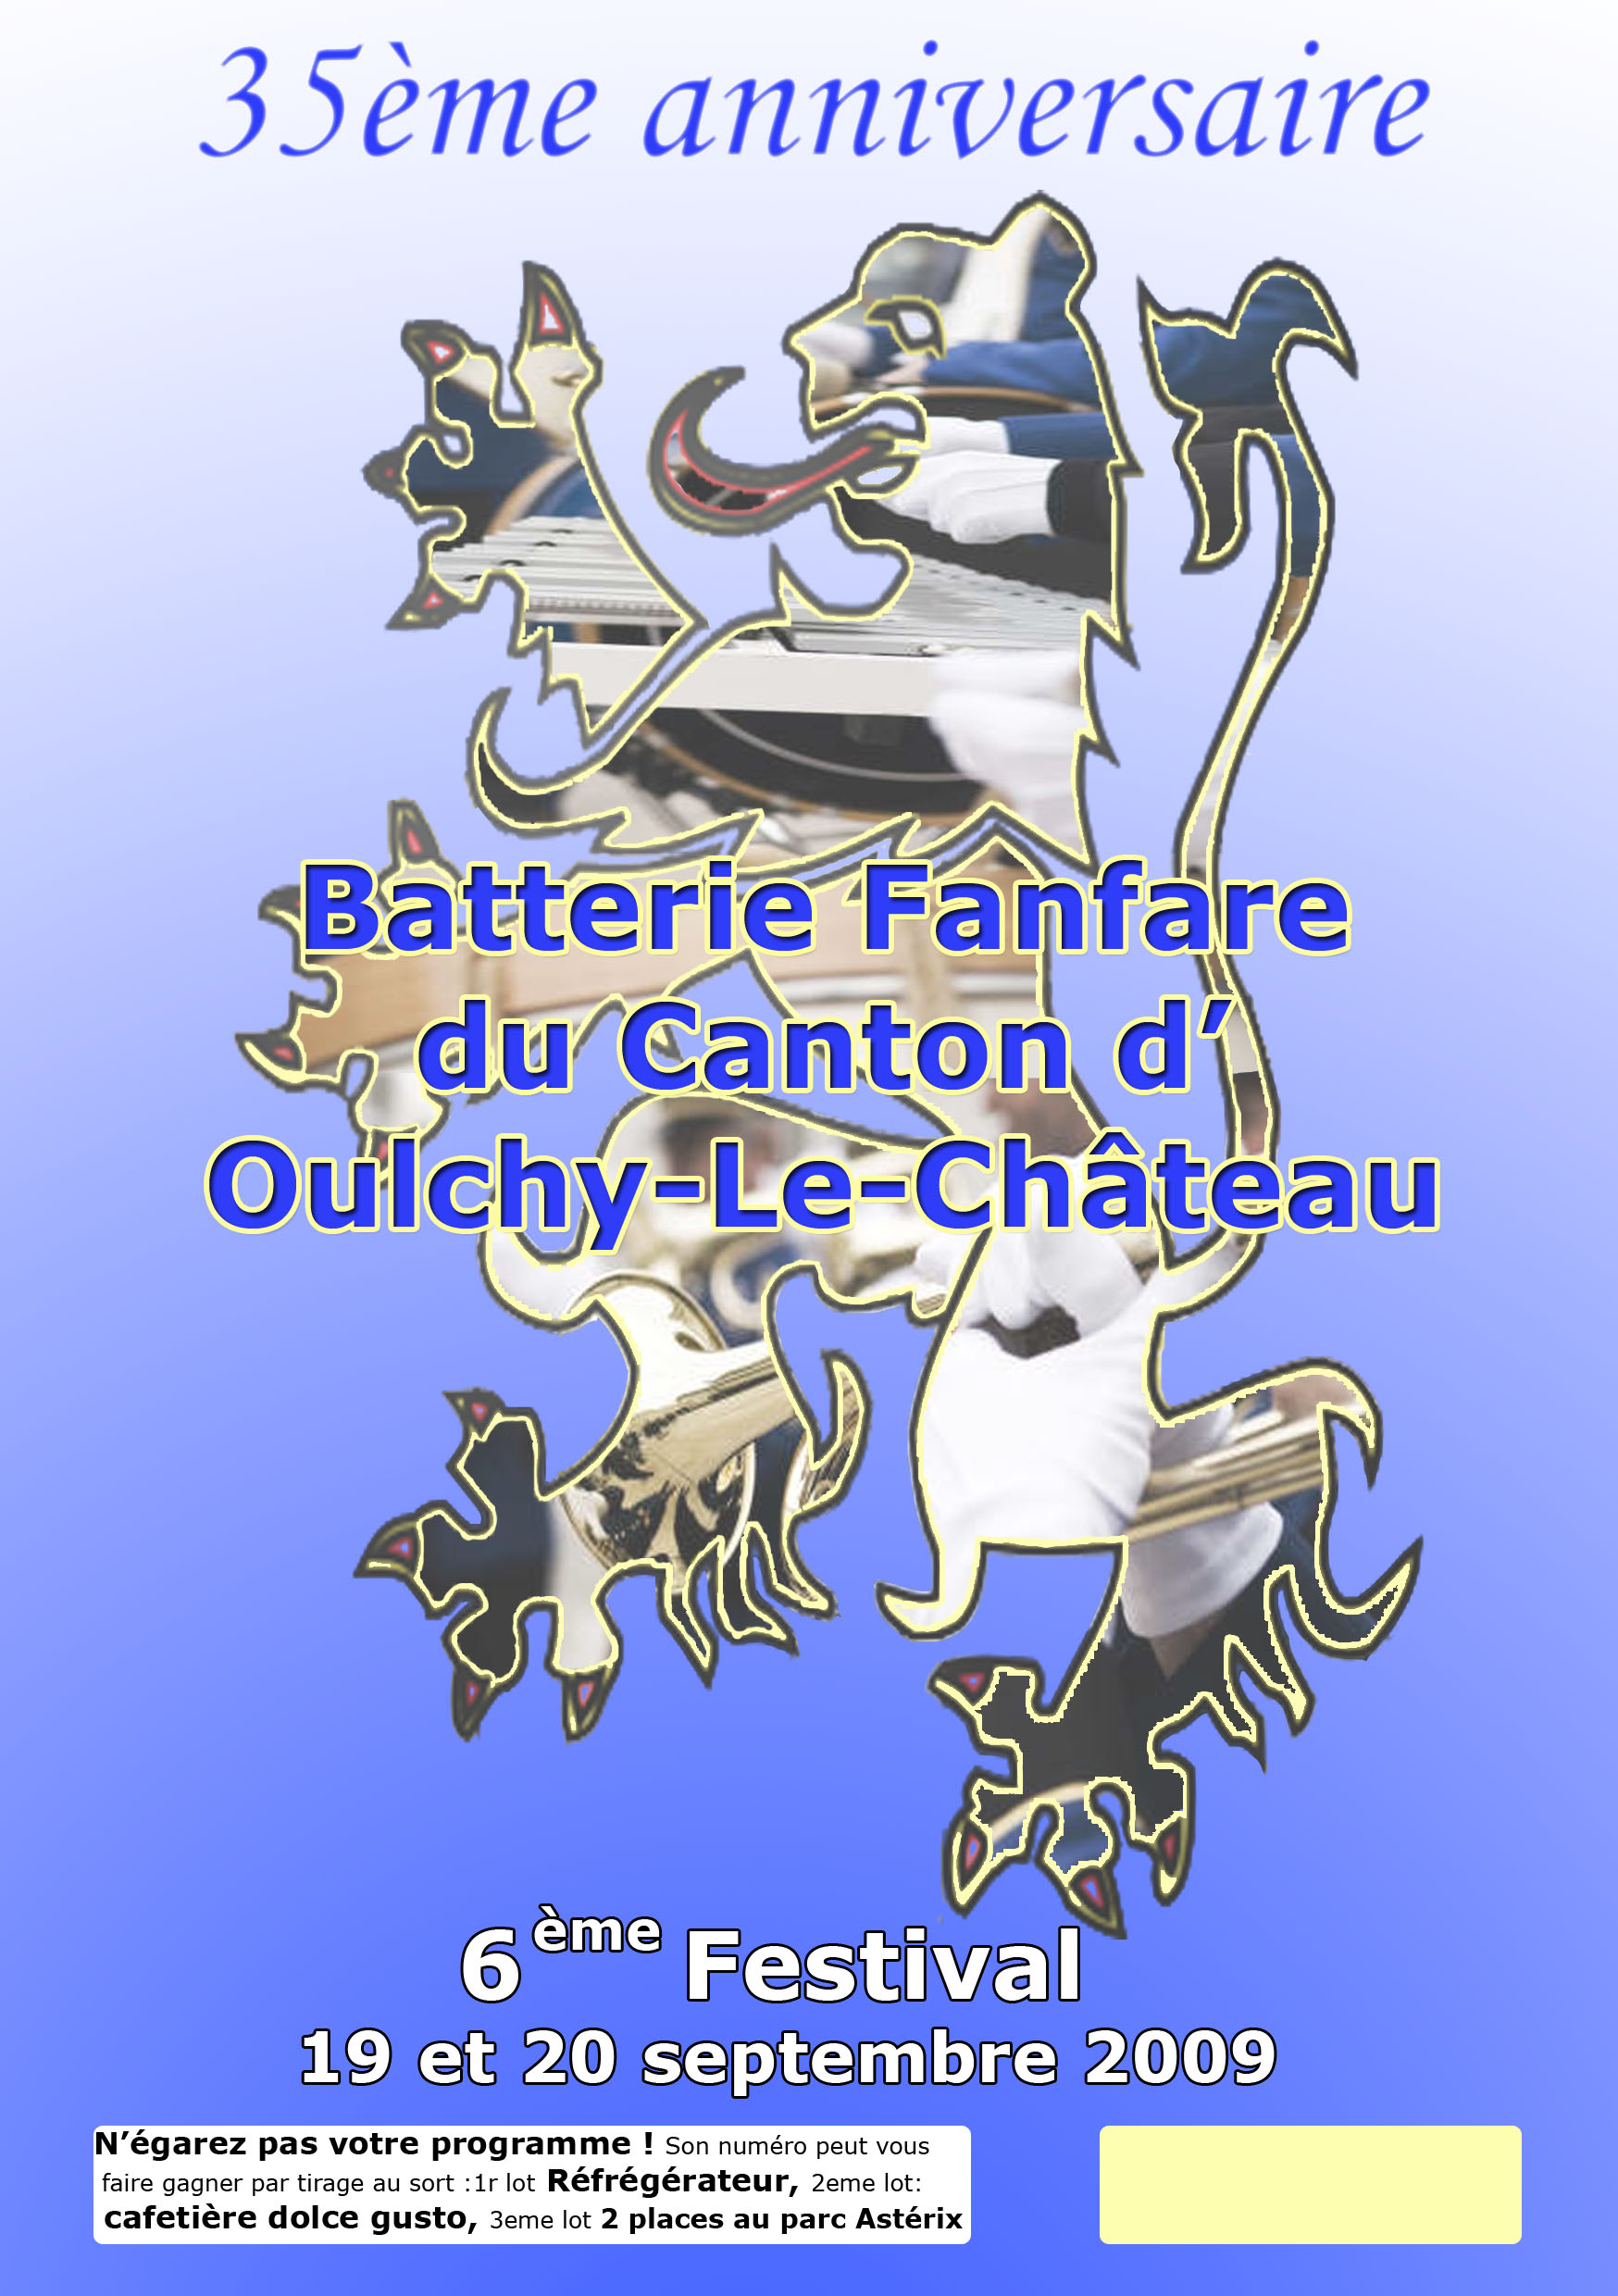 Batterie-fanfare d'oulchy-le-chateau